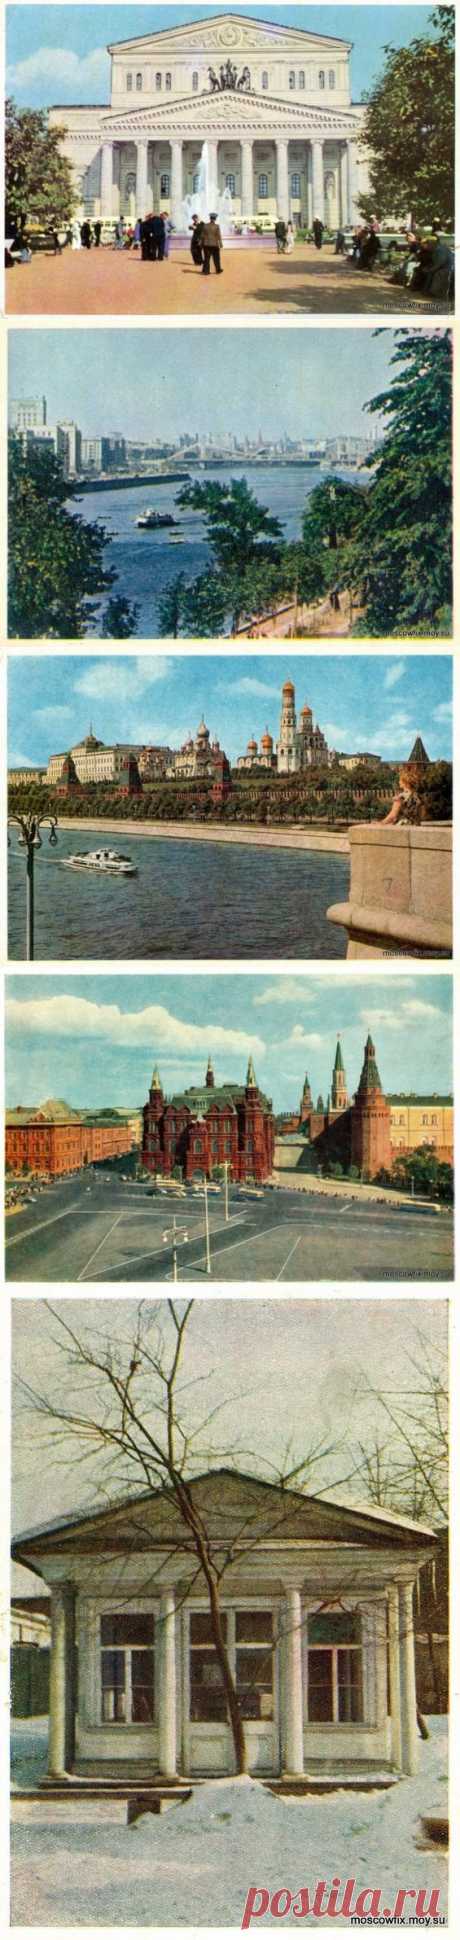 Москва в 1953 - 62 годах / Назад в СССР / Back in USSR